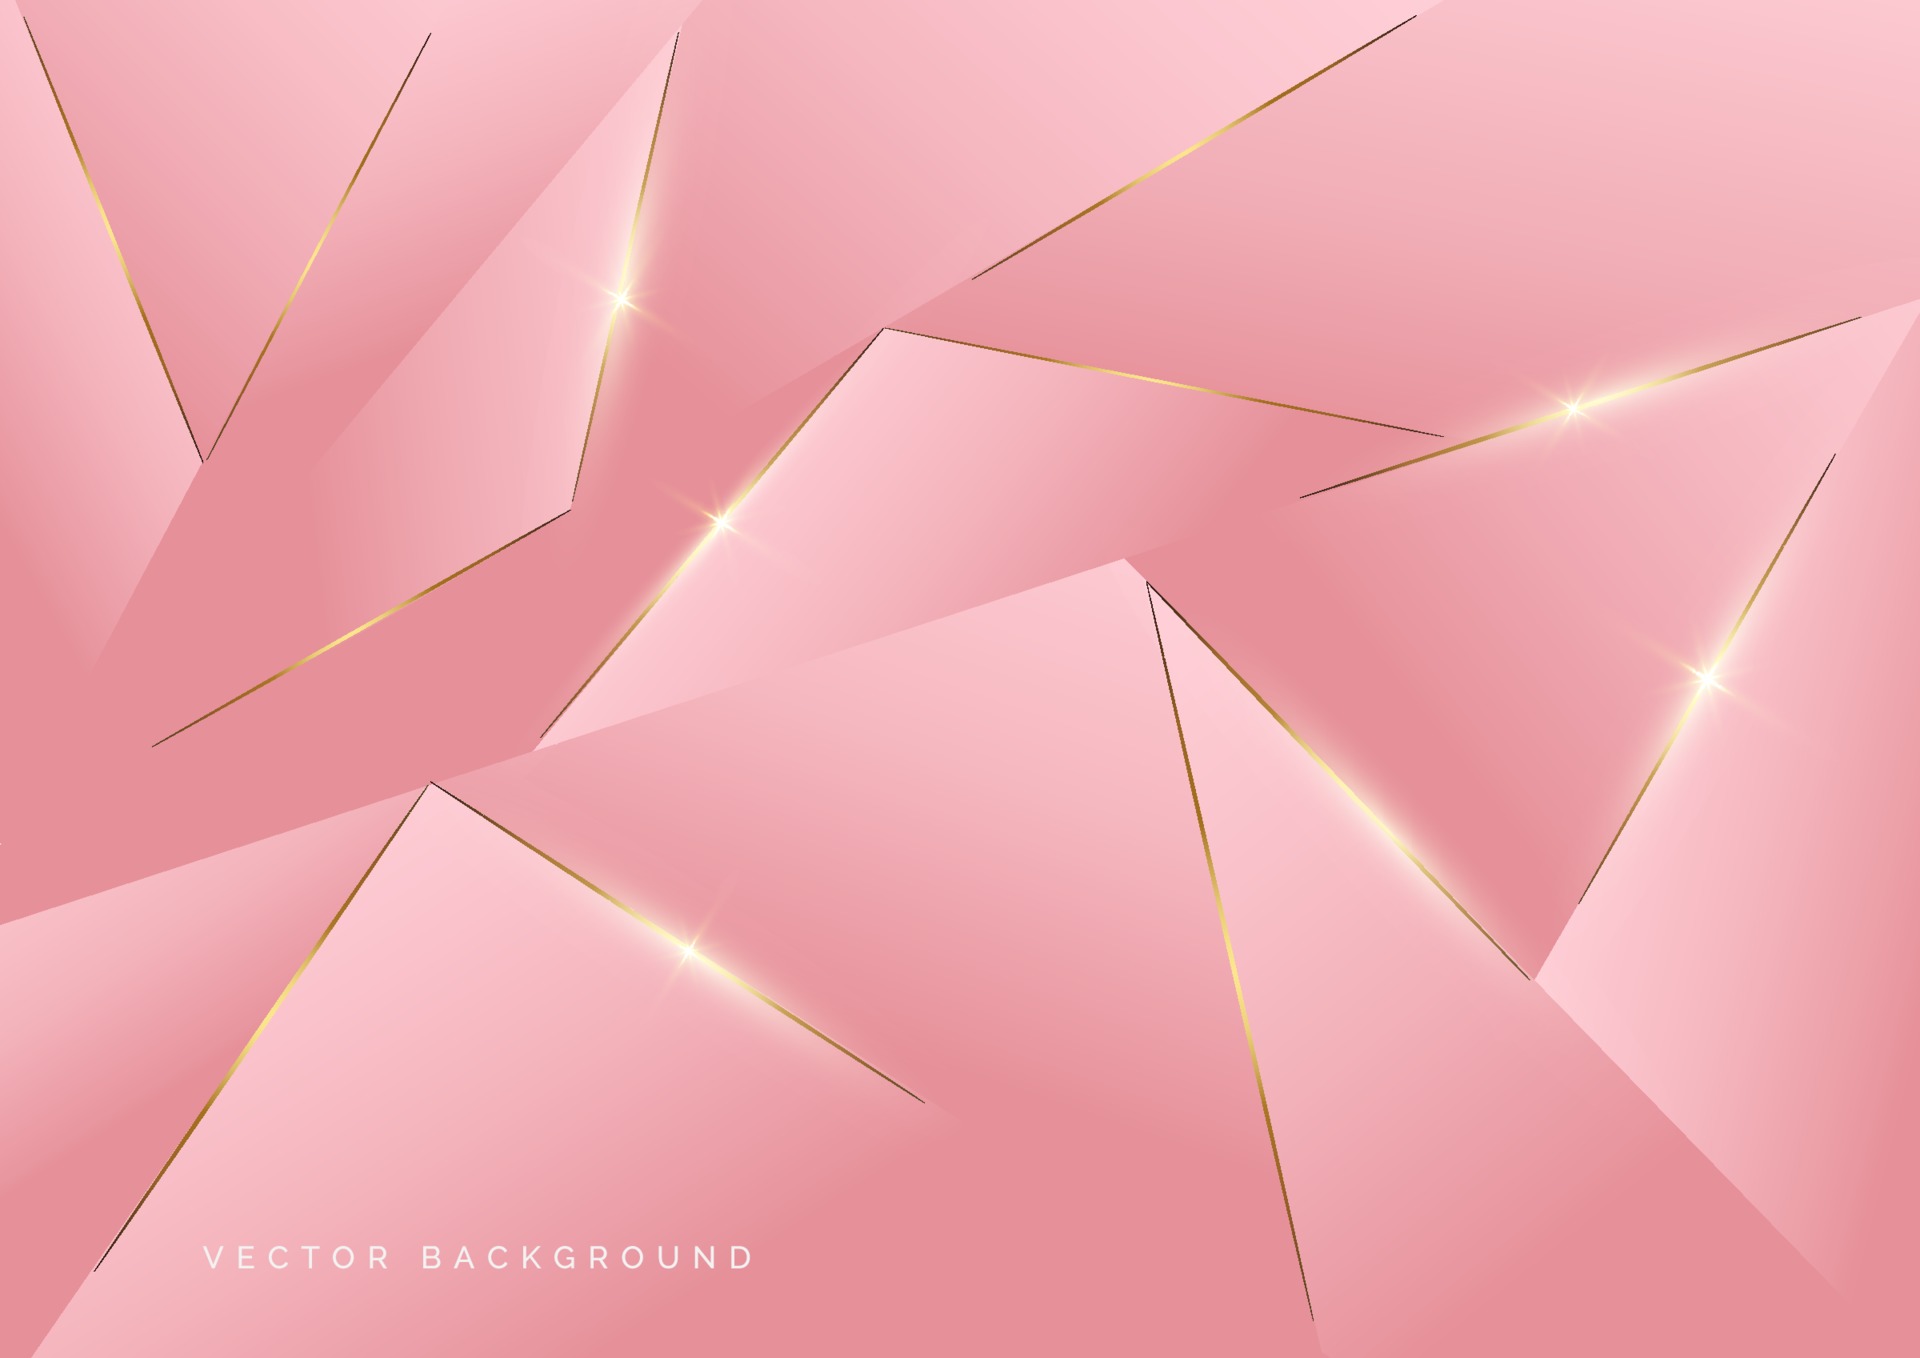 Vector nền hồng sẽ khiến cho bất kỳ thiết kế nào trở nên đặc biệt và tuyệt đẹp. Hãy xem hình ảnh liên quan để khám phá những ý tưởng mới lạ với sắc hồng này.